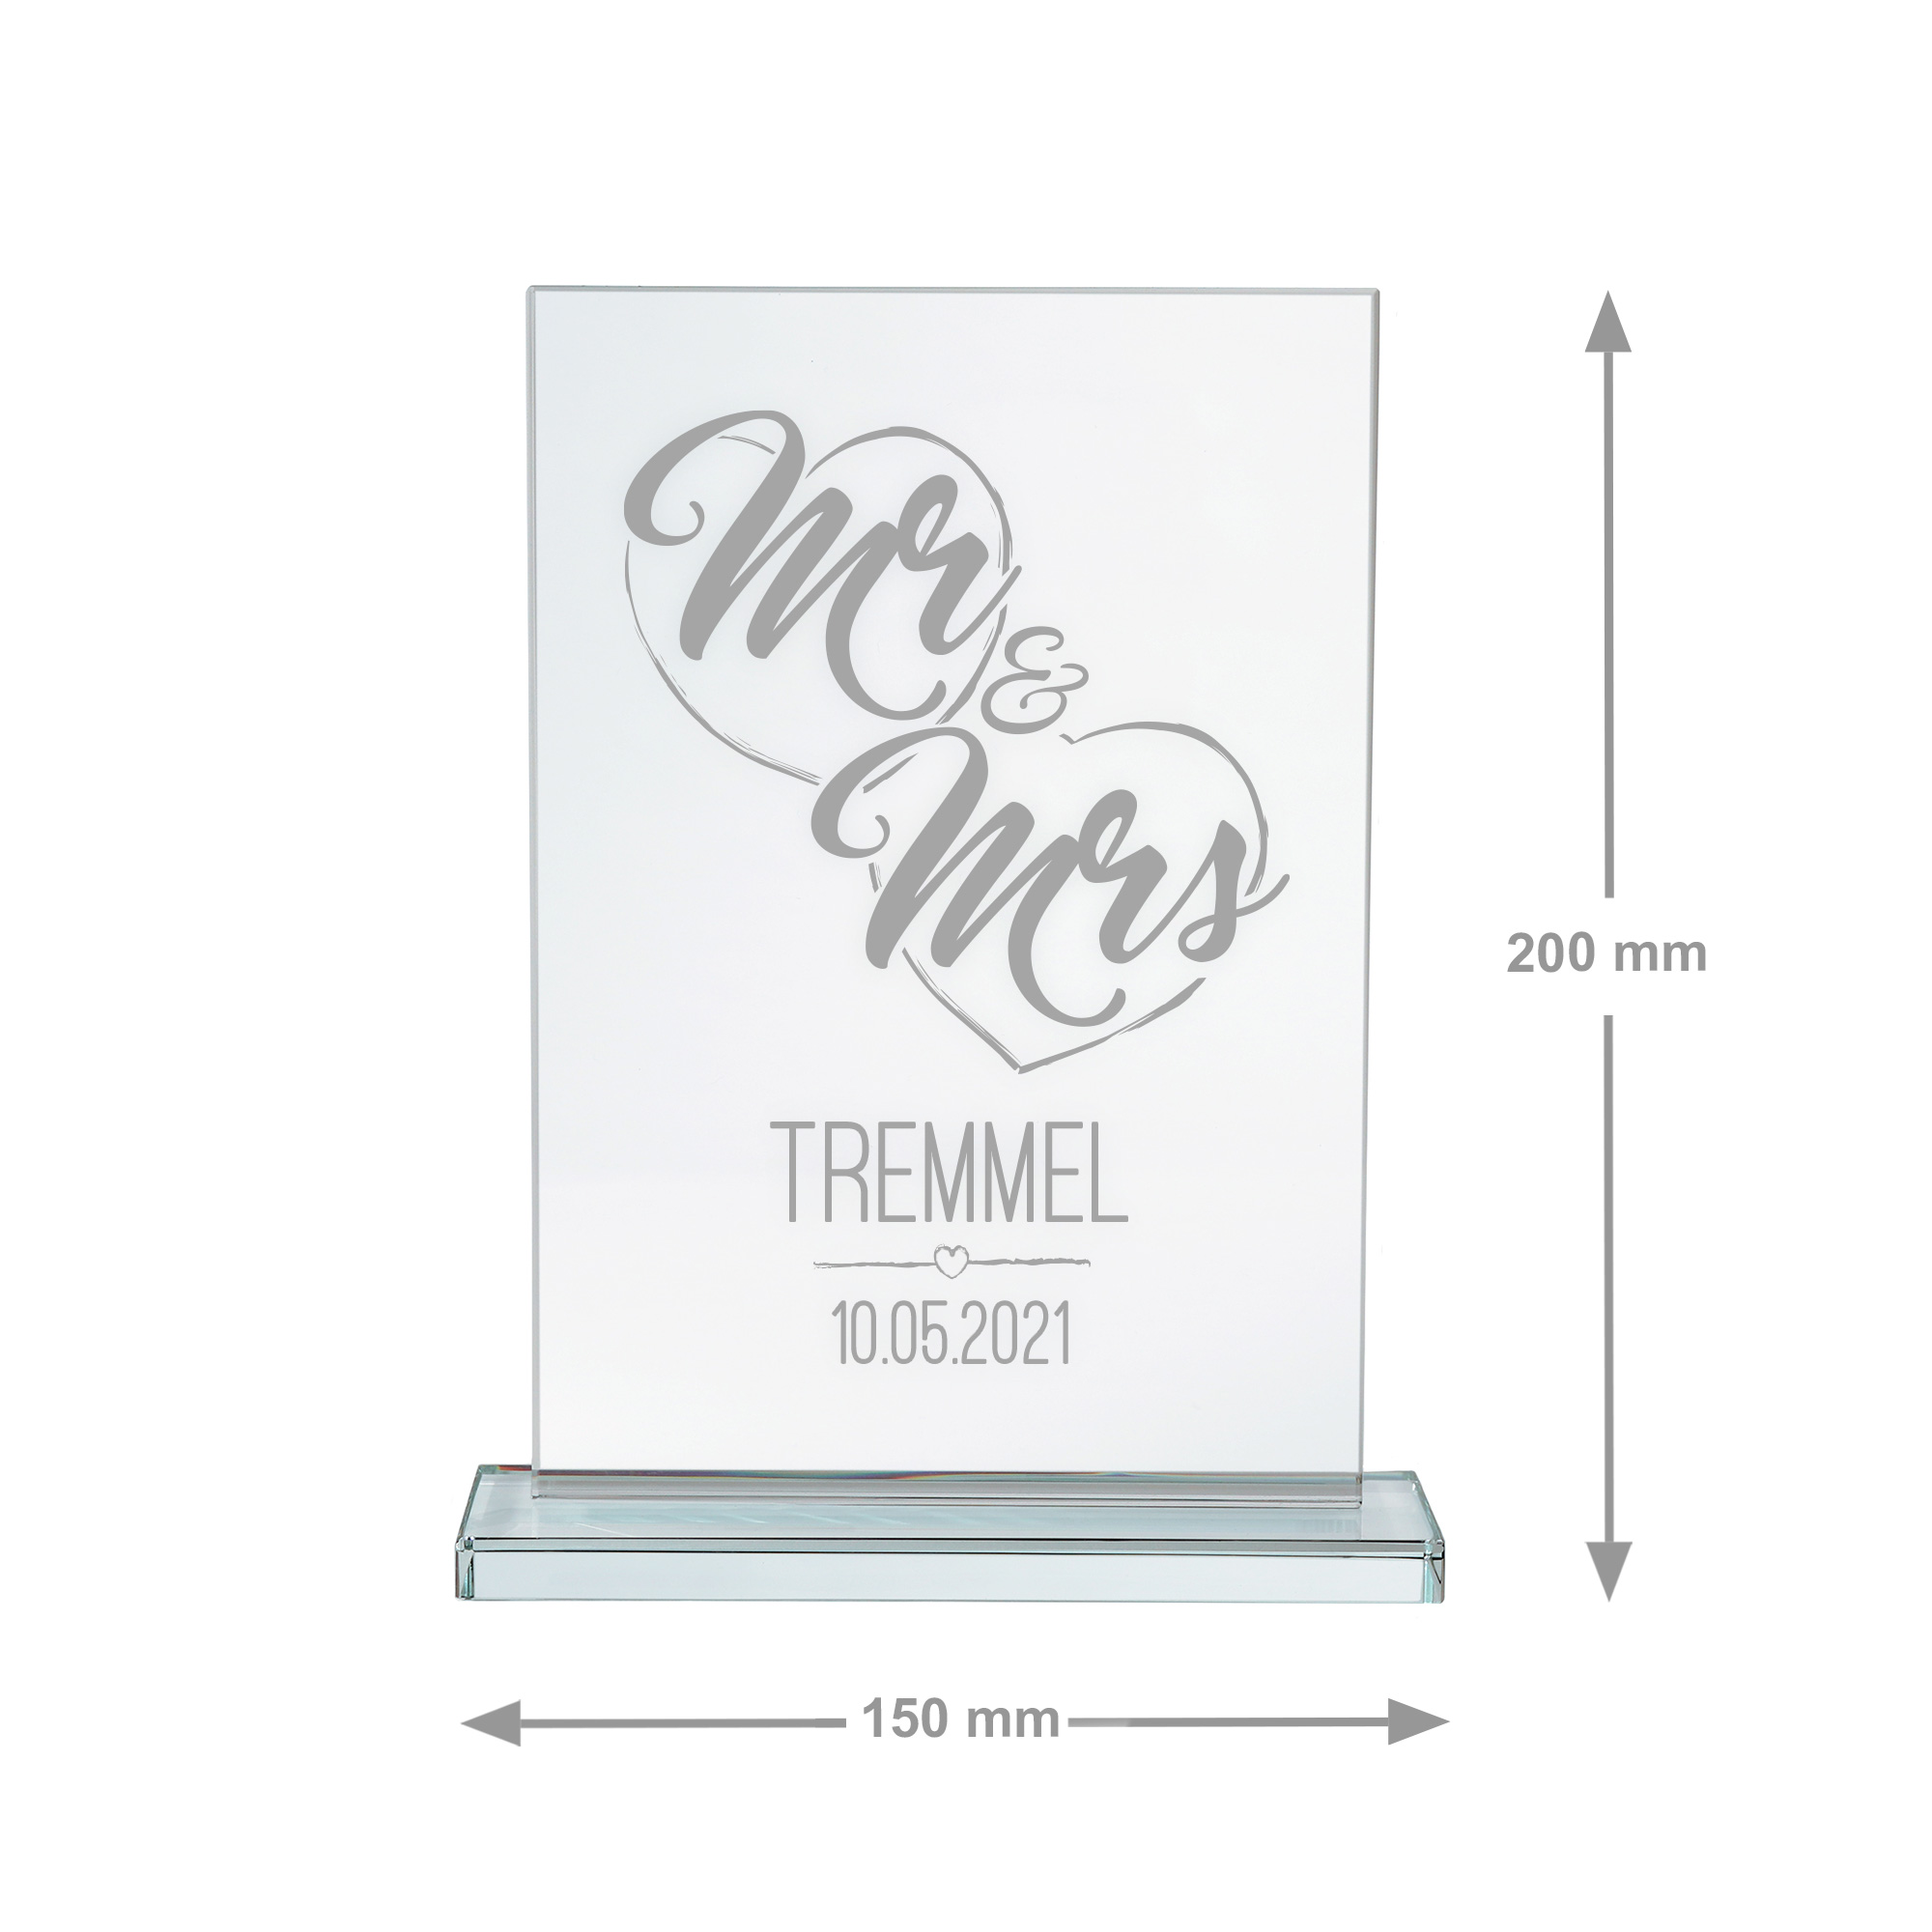 Glas Pokal für Paare, gravierte Glasdeko zur Hochzeit oder Hochzeitstag, Tischdeko Glaspokal mit Gravur Mr & Mrs, personalisierte Glastrophäe mit So